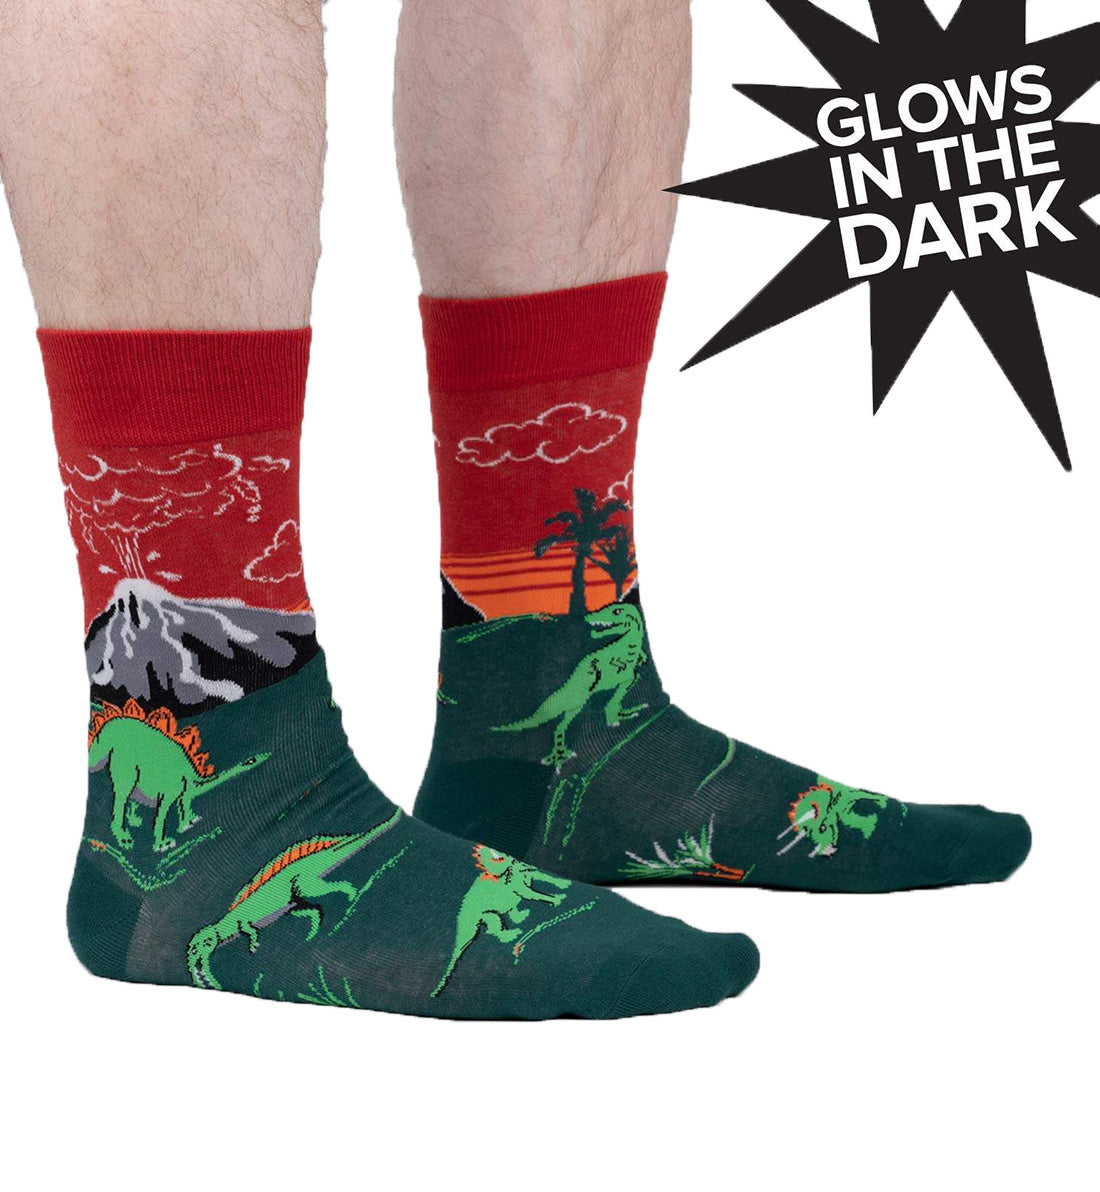 SOCK it to me Men's Crew Socks (MEF0478),Dinosaur Days (Glow) - Dinosaur Days (Glow),One Size